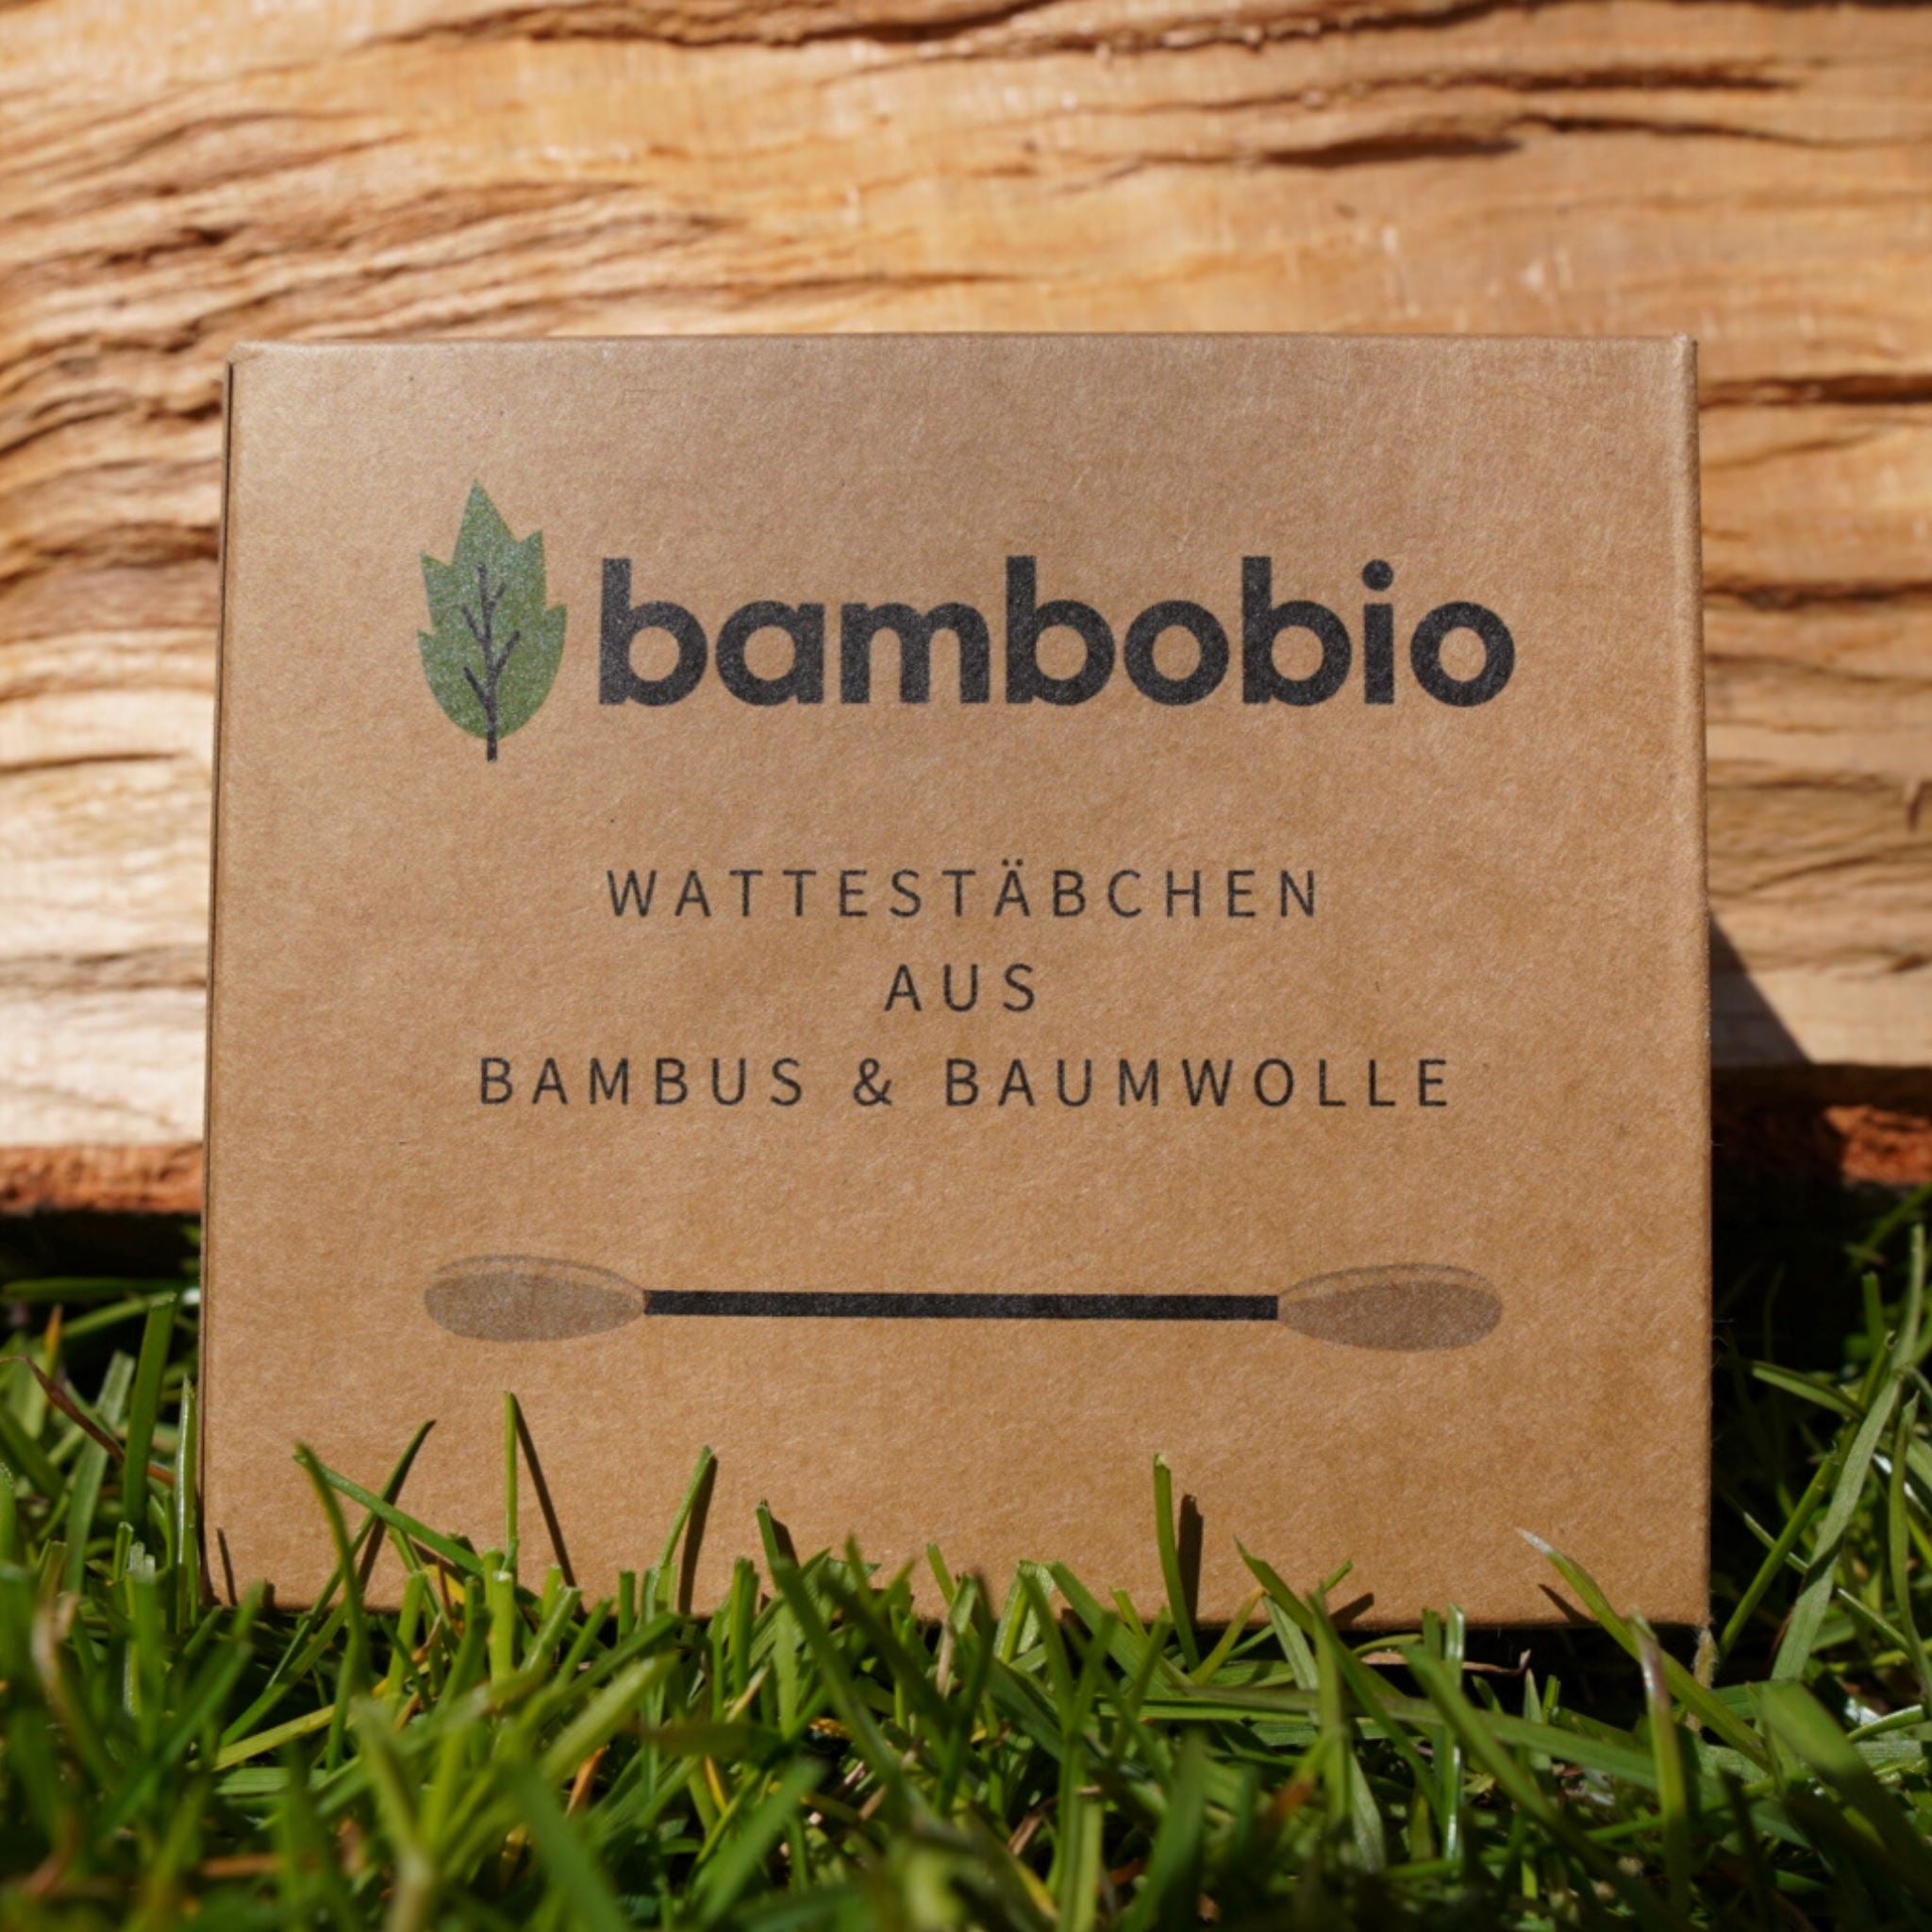 Wattestäbchen aus Bambus & Baumwolle Wattestäbchen bambobio   